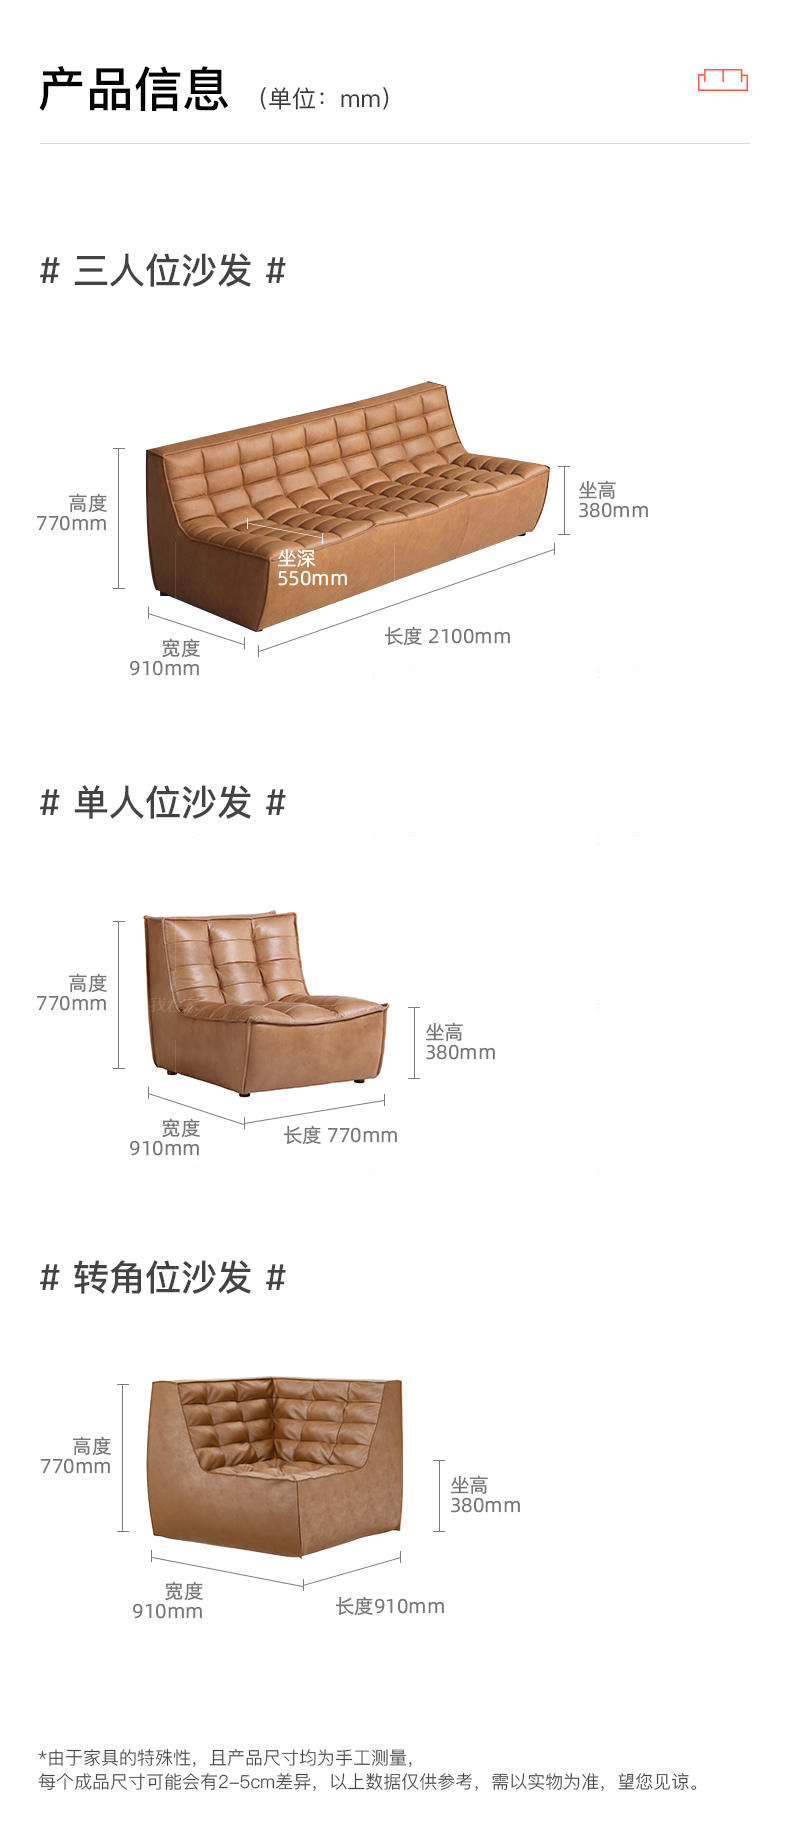 中古风风格华夫饼沙发的家具详细介绍